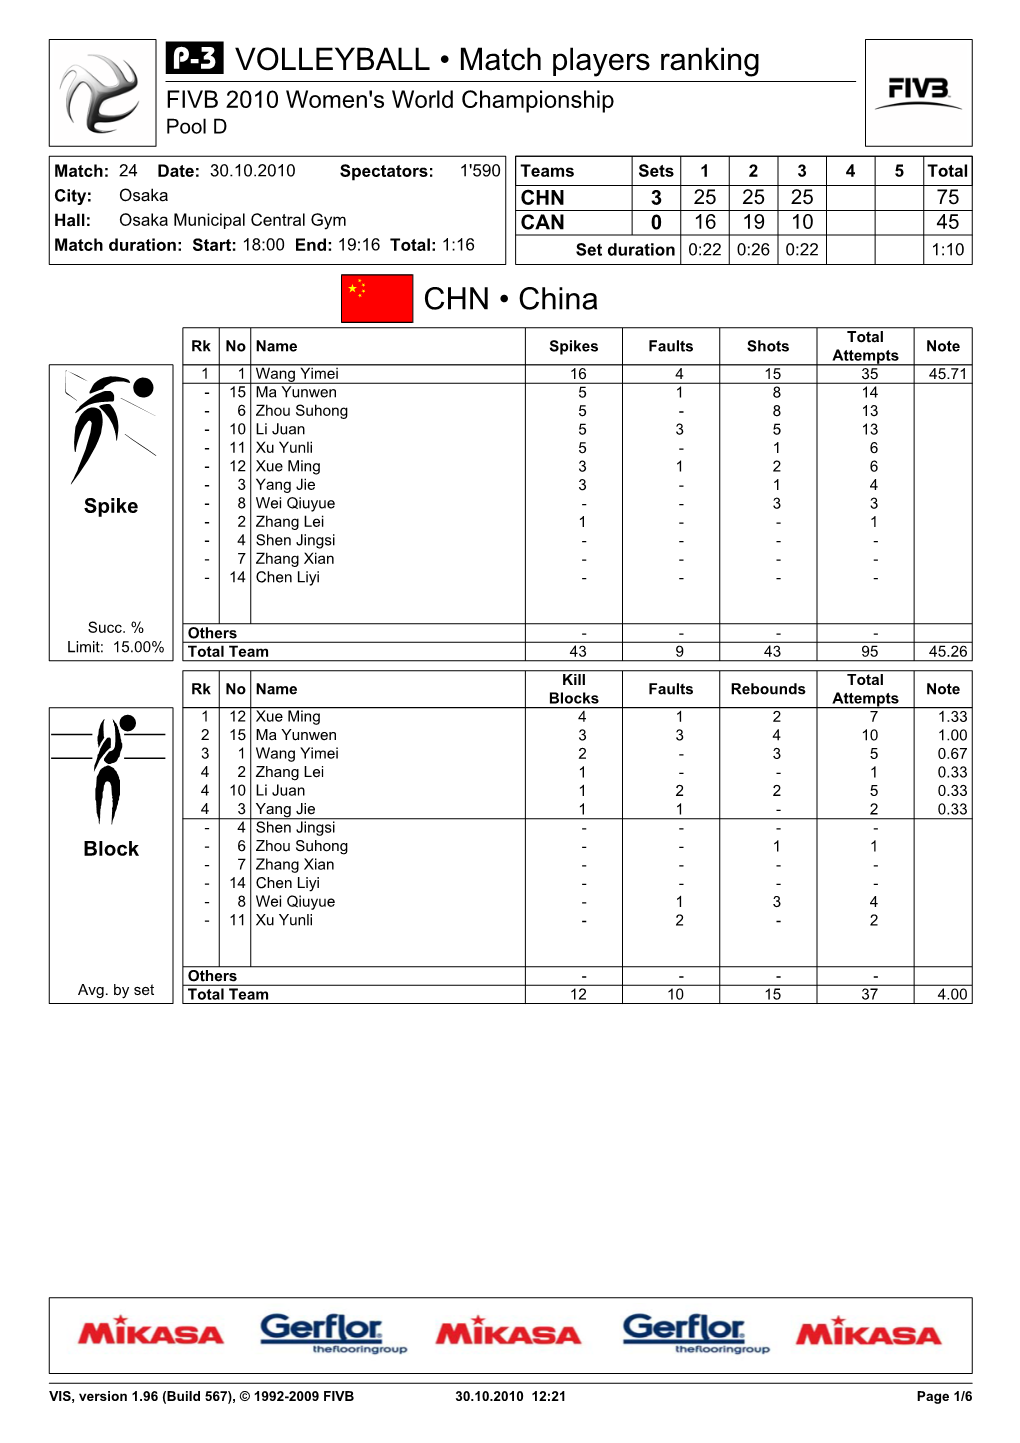 CHN • China VOLLEYBALL • Match Players Ranking